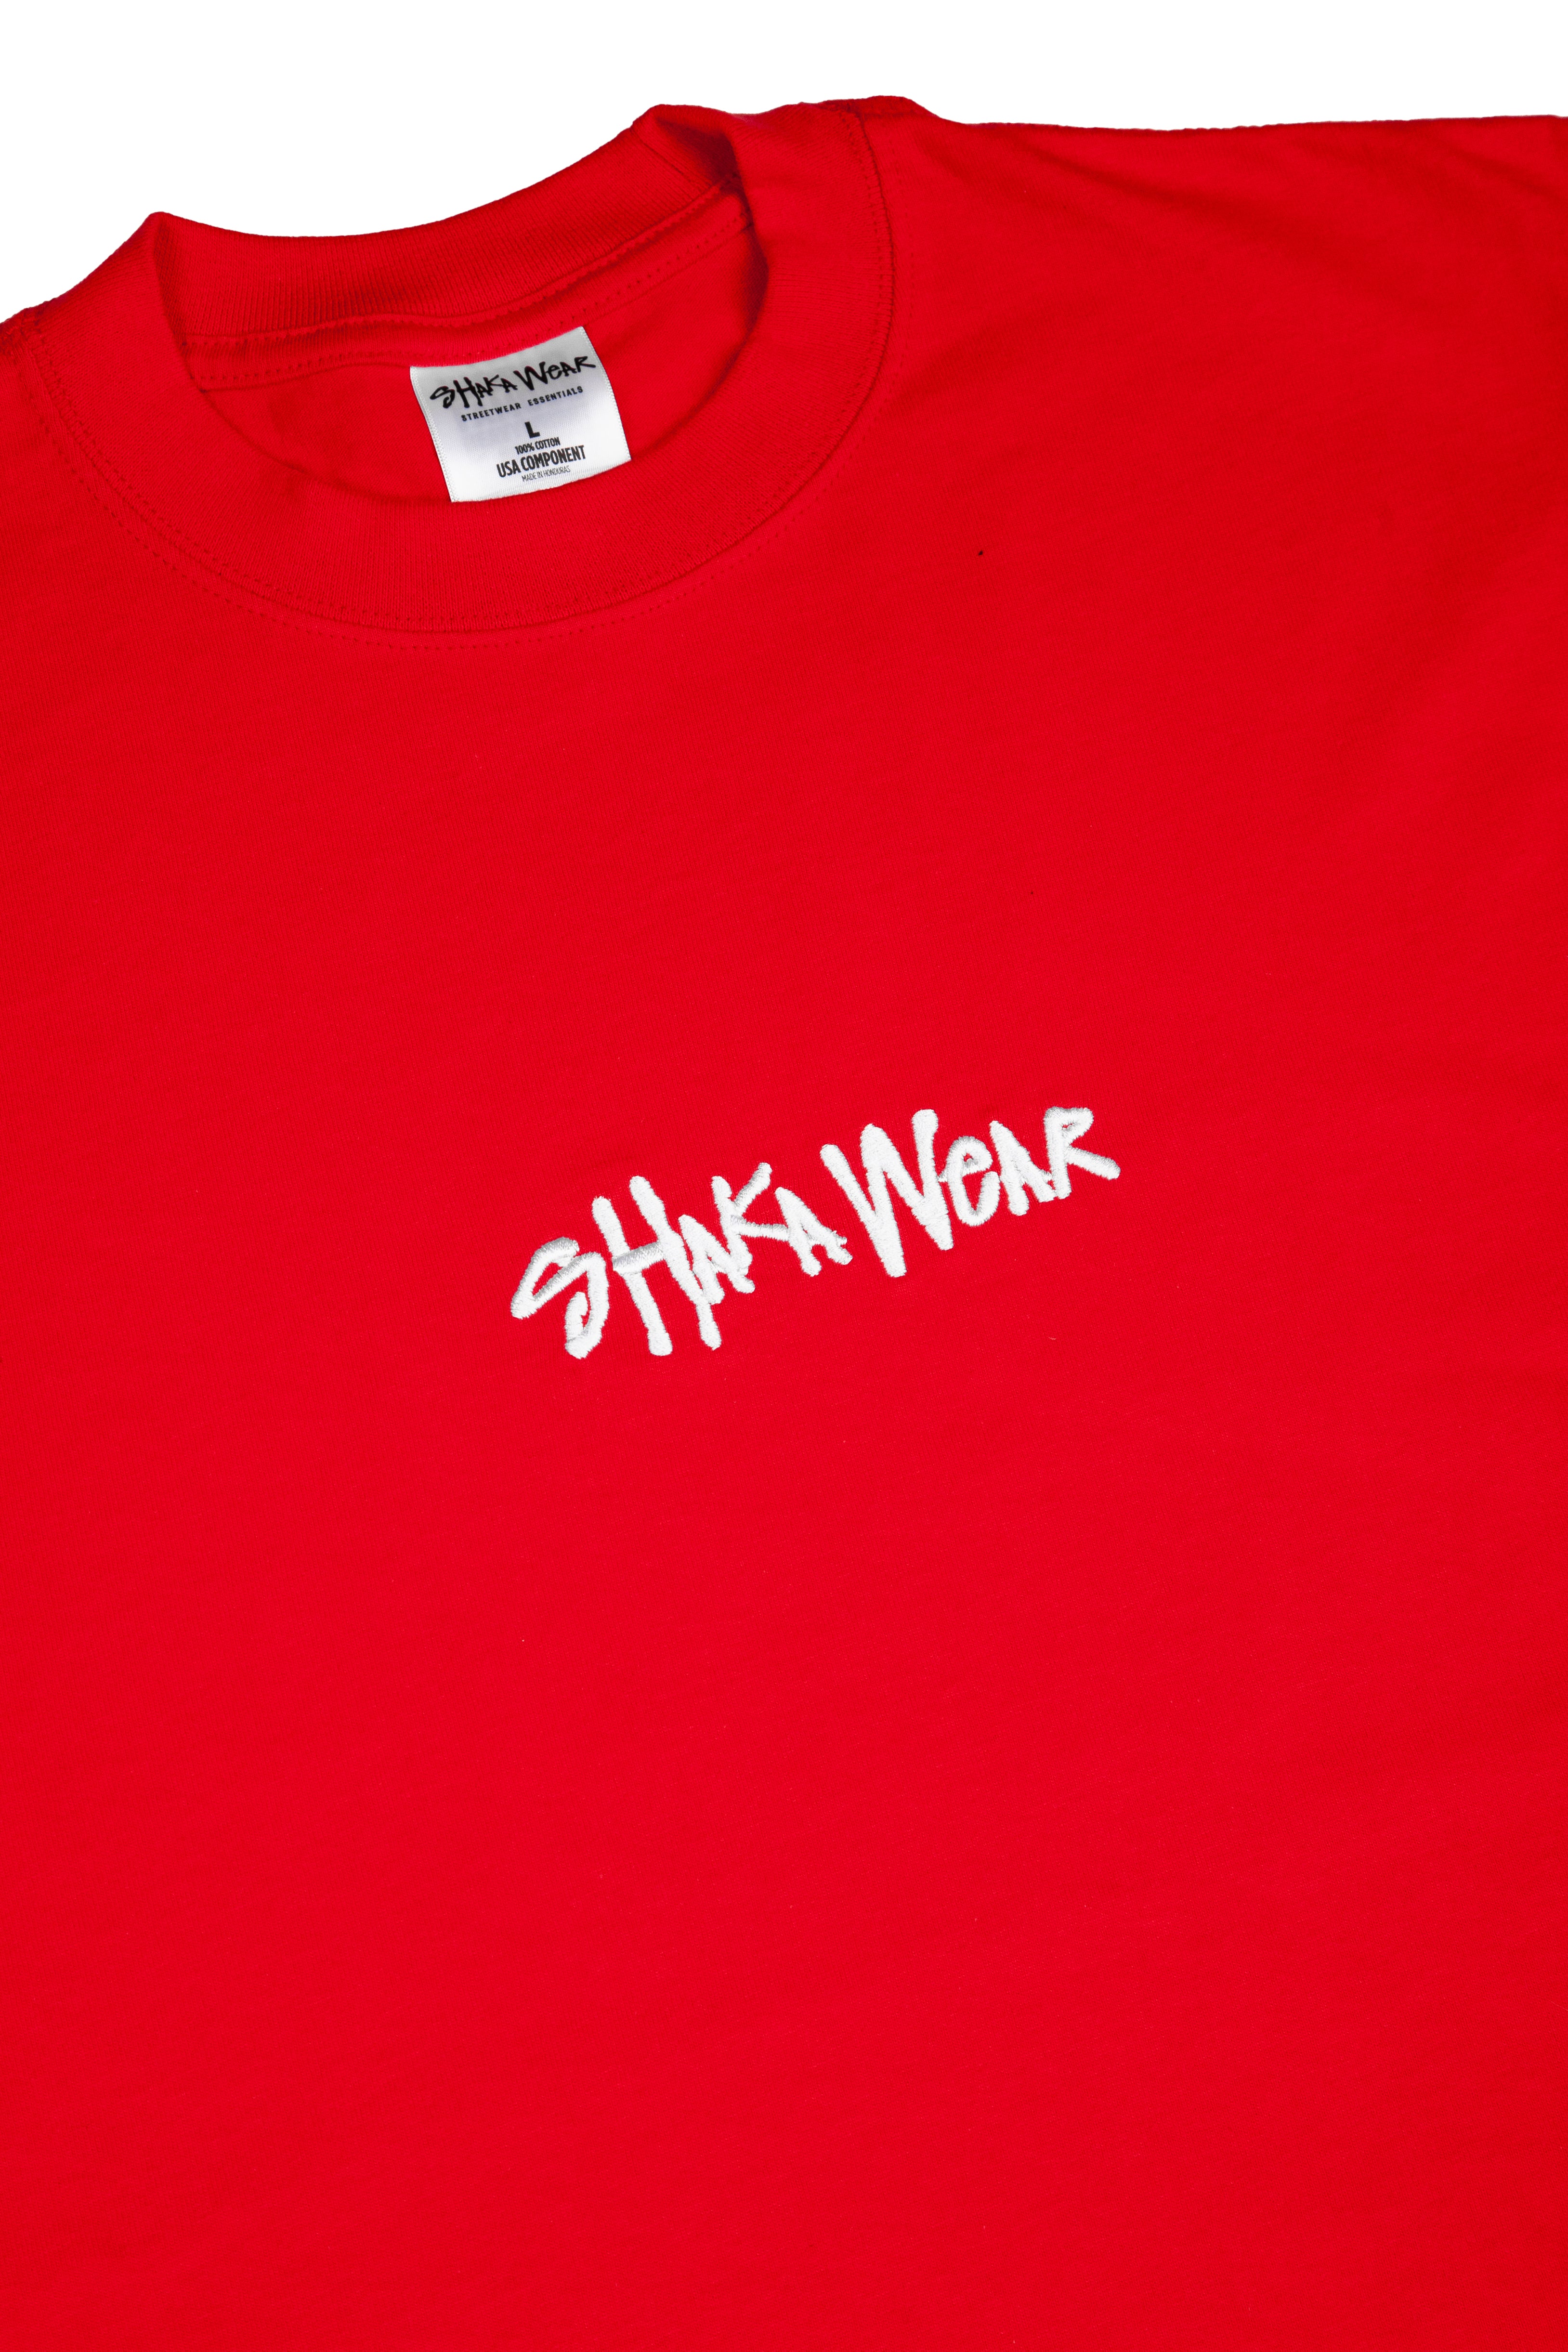 Shaka Wear – Shakawear.com